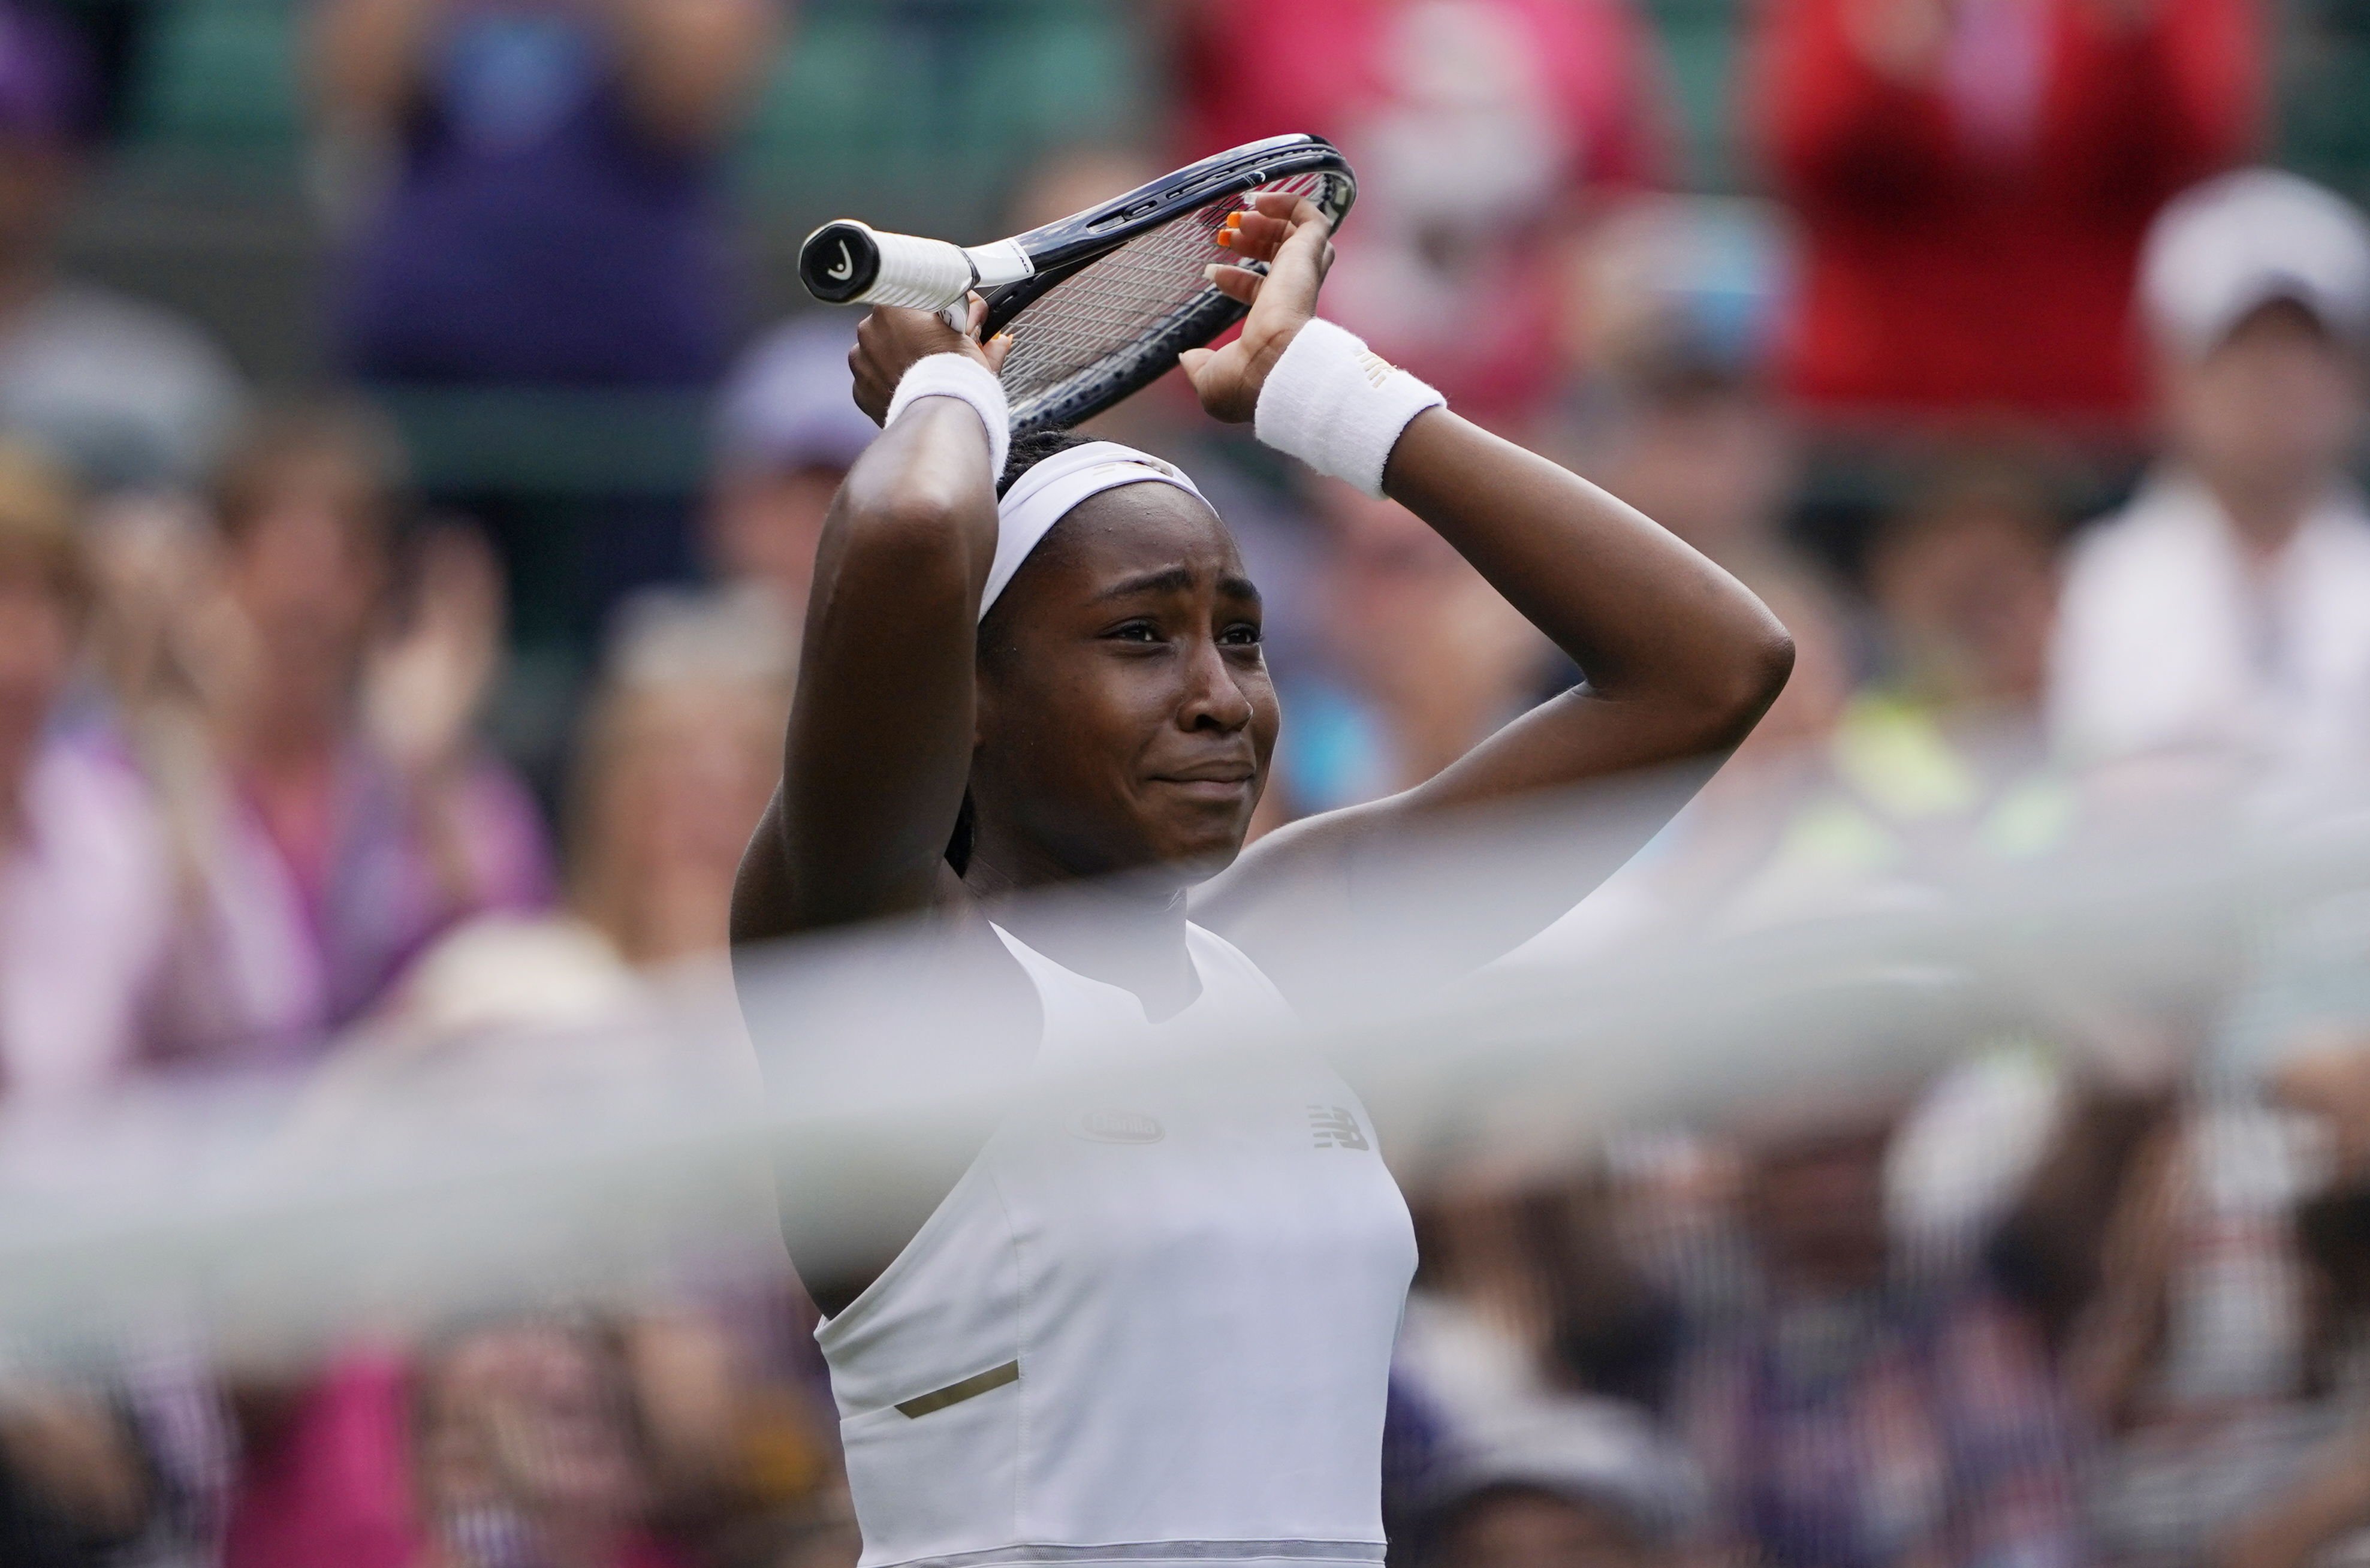 Cori Gauff, de 15 años, sorprende y derrota a Venus Williams en Wimbledon